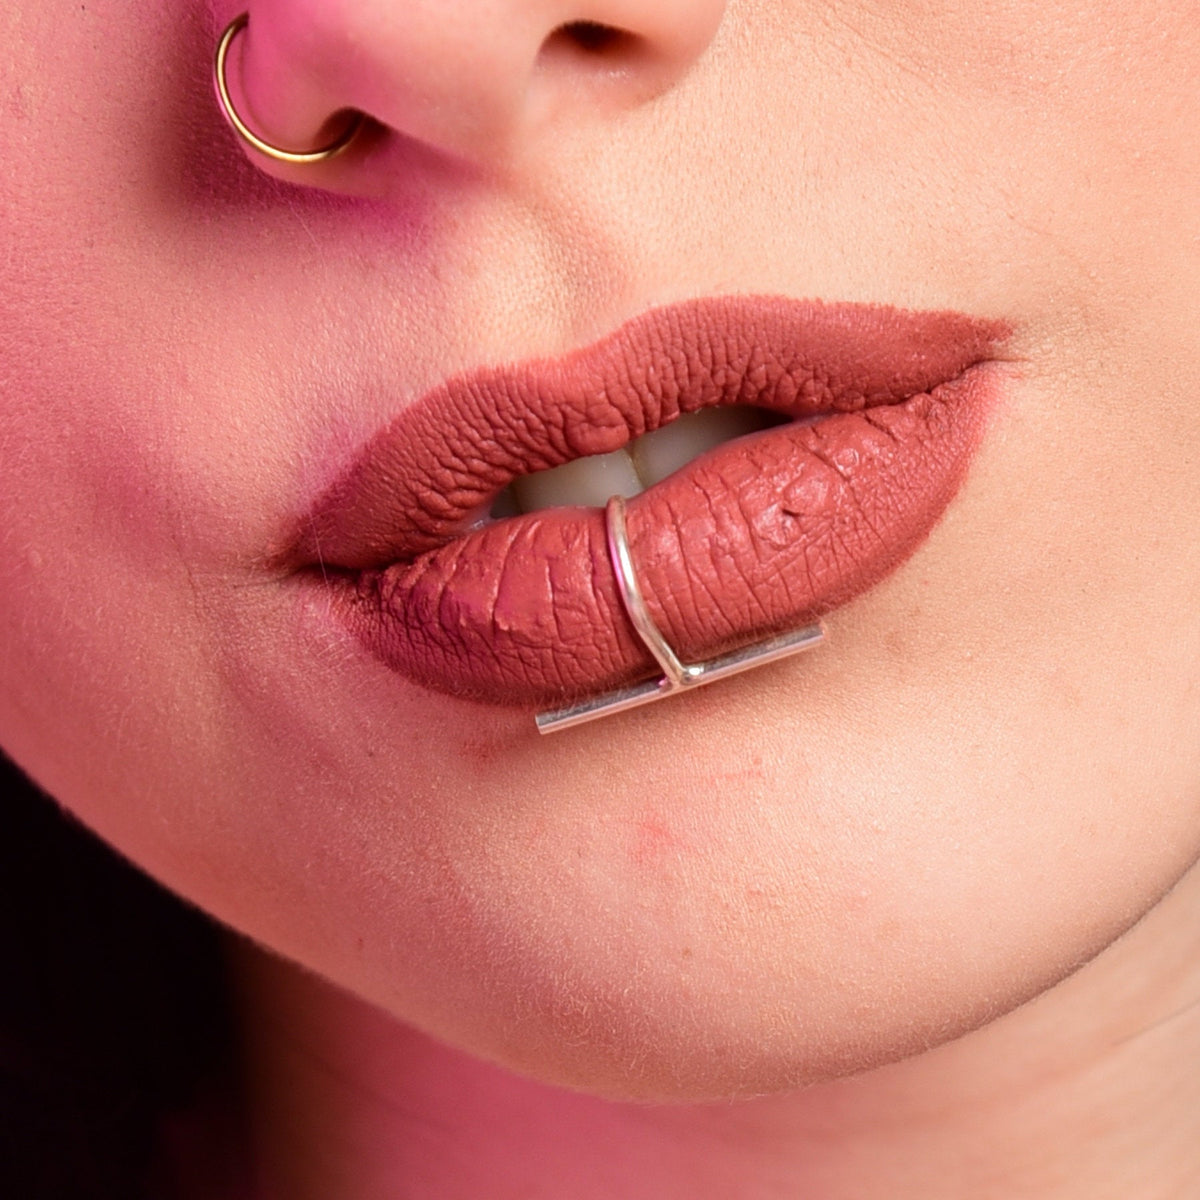 Lip Rings | Labret Jewelry | Labret Studs | Lip Piercing Jewelry | Fla -  Rebel Bod